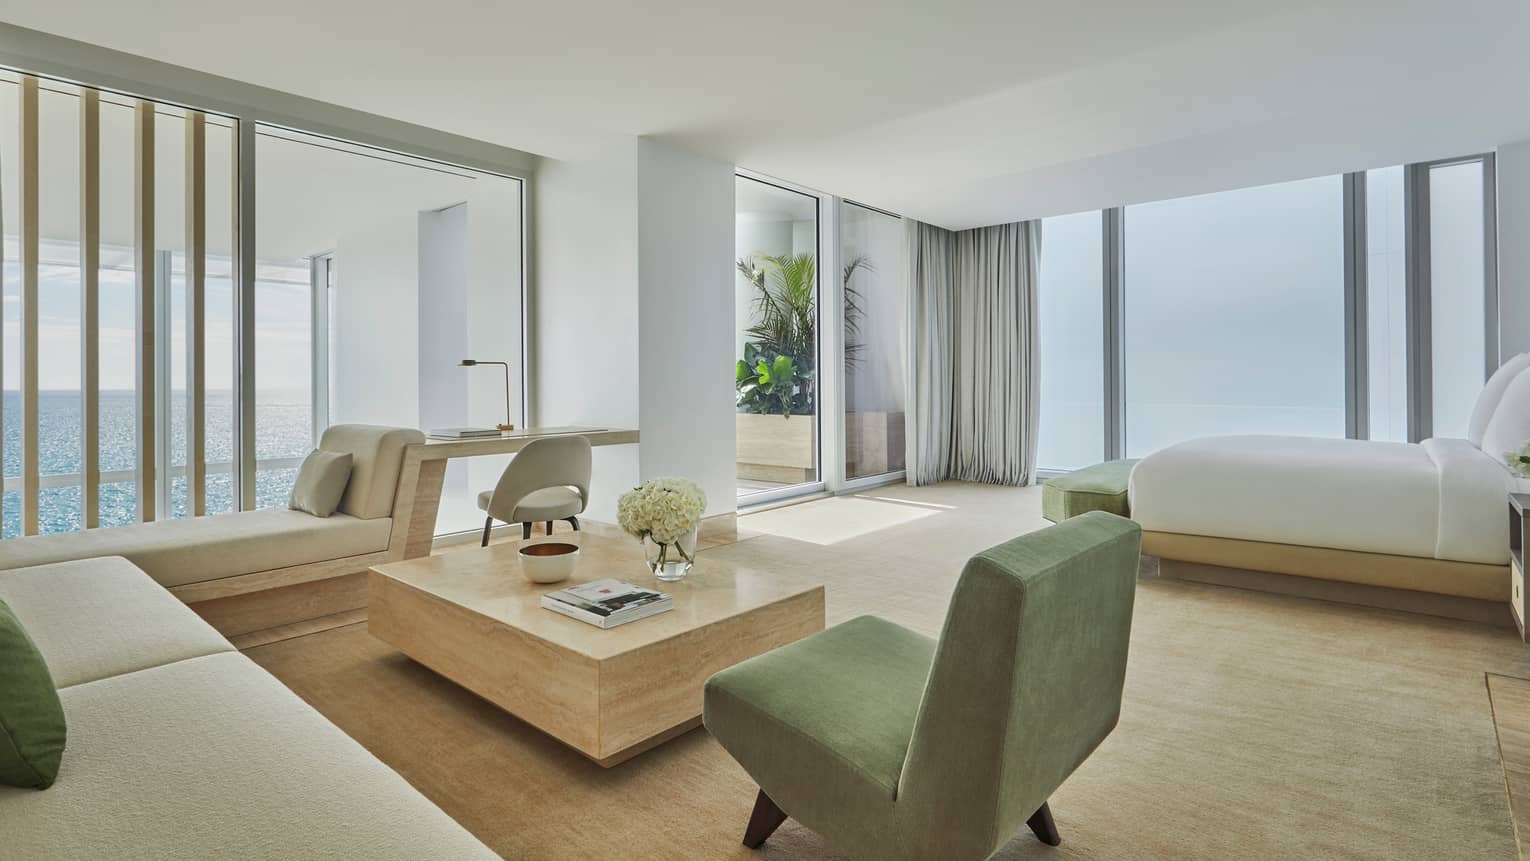 Petnhouse bedroom, floor-to-ceiling corner windows, beige and green sofa, armchair